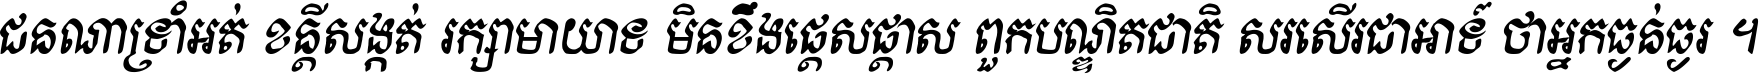 Kh Baphnom Khveak Bold Italic